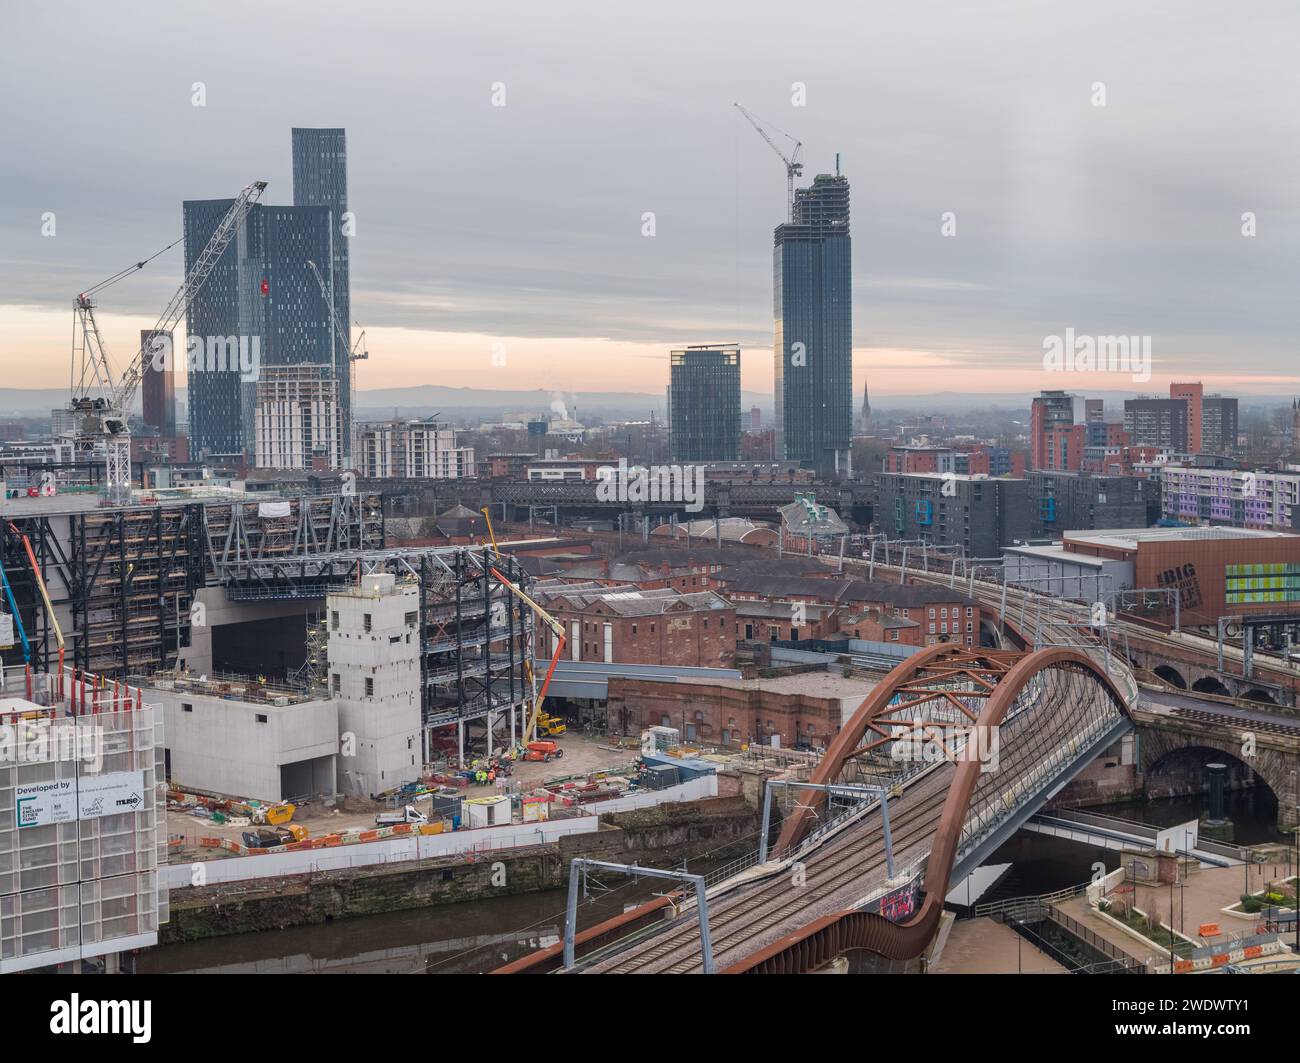 Luftbild der Eisenbahnlinie und Brücke des Ordsall Chord, mit den Aviva Studios im Stadtzentrum von Manchester, Großbritannien Stockfoto